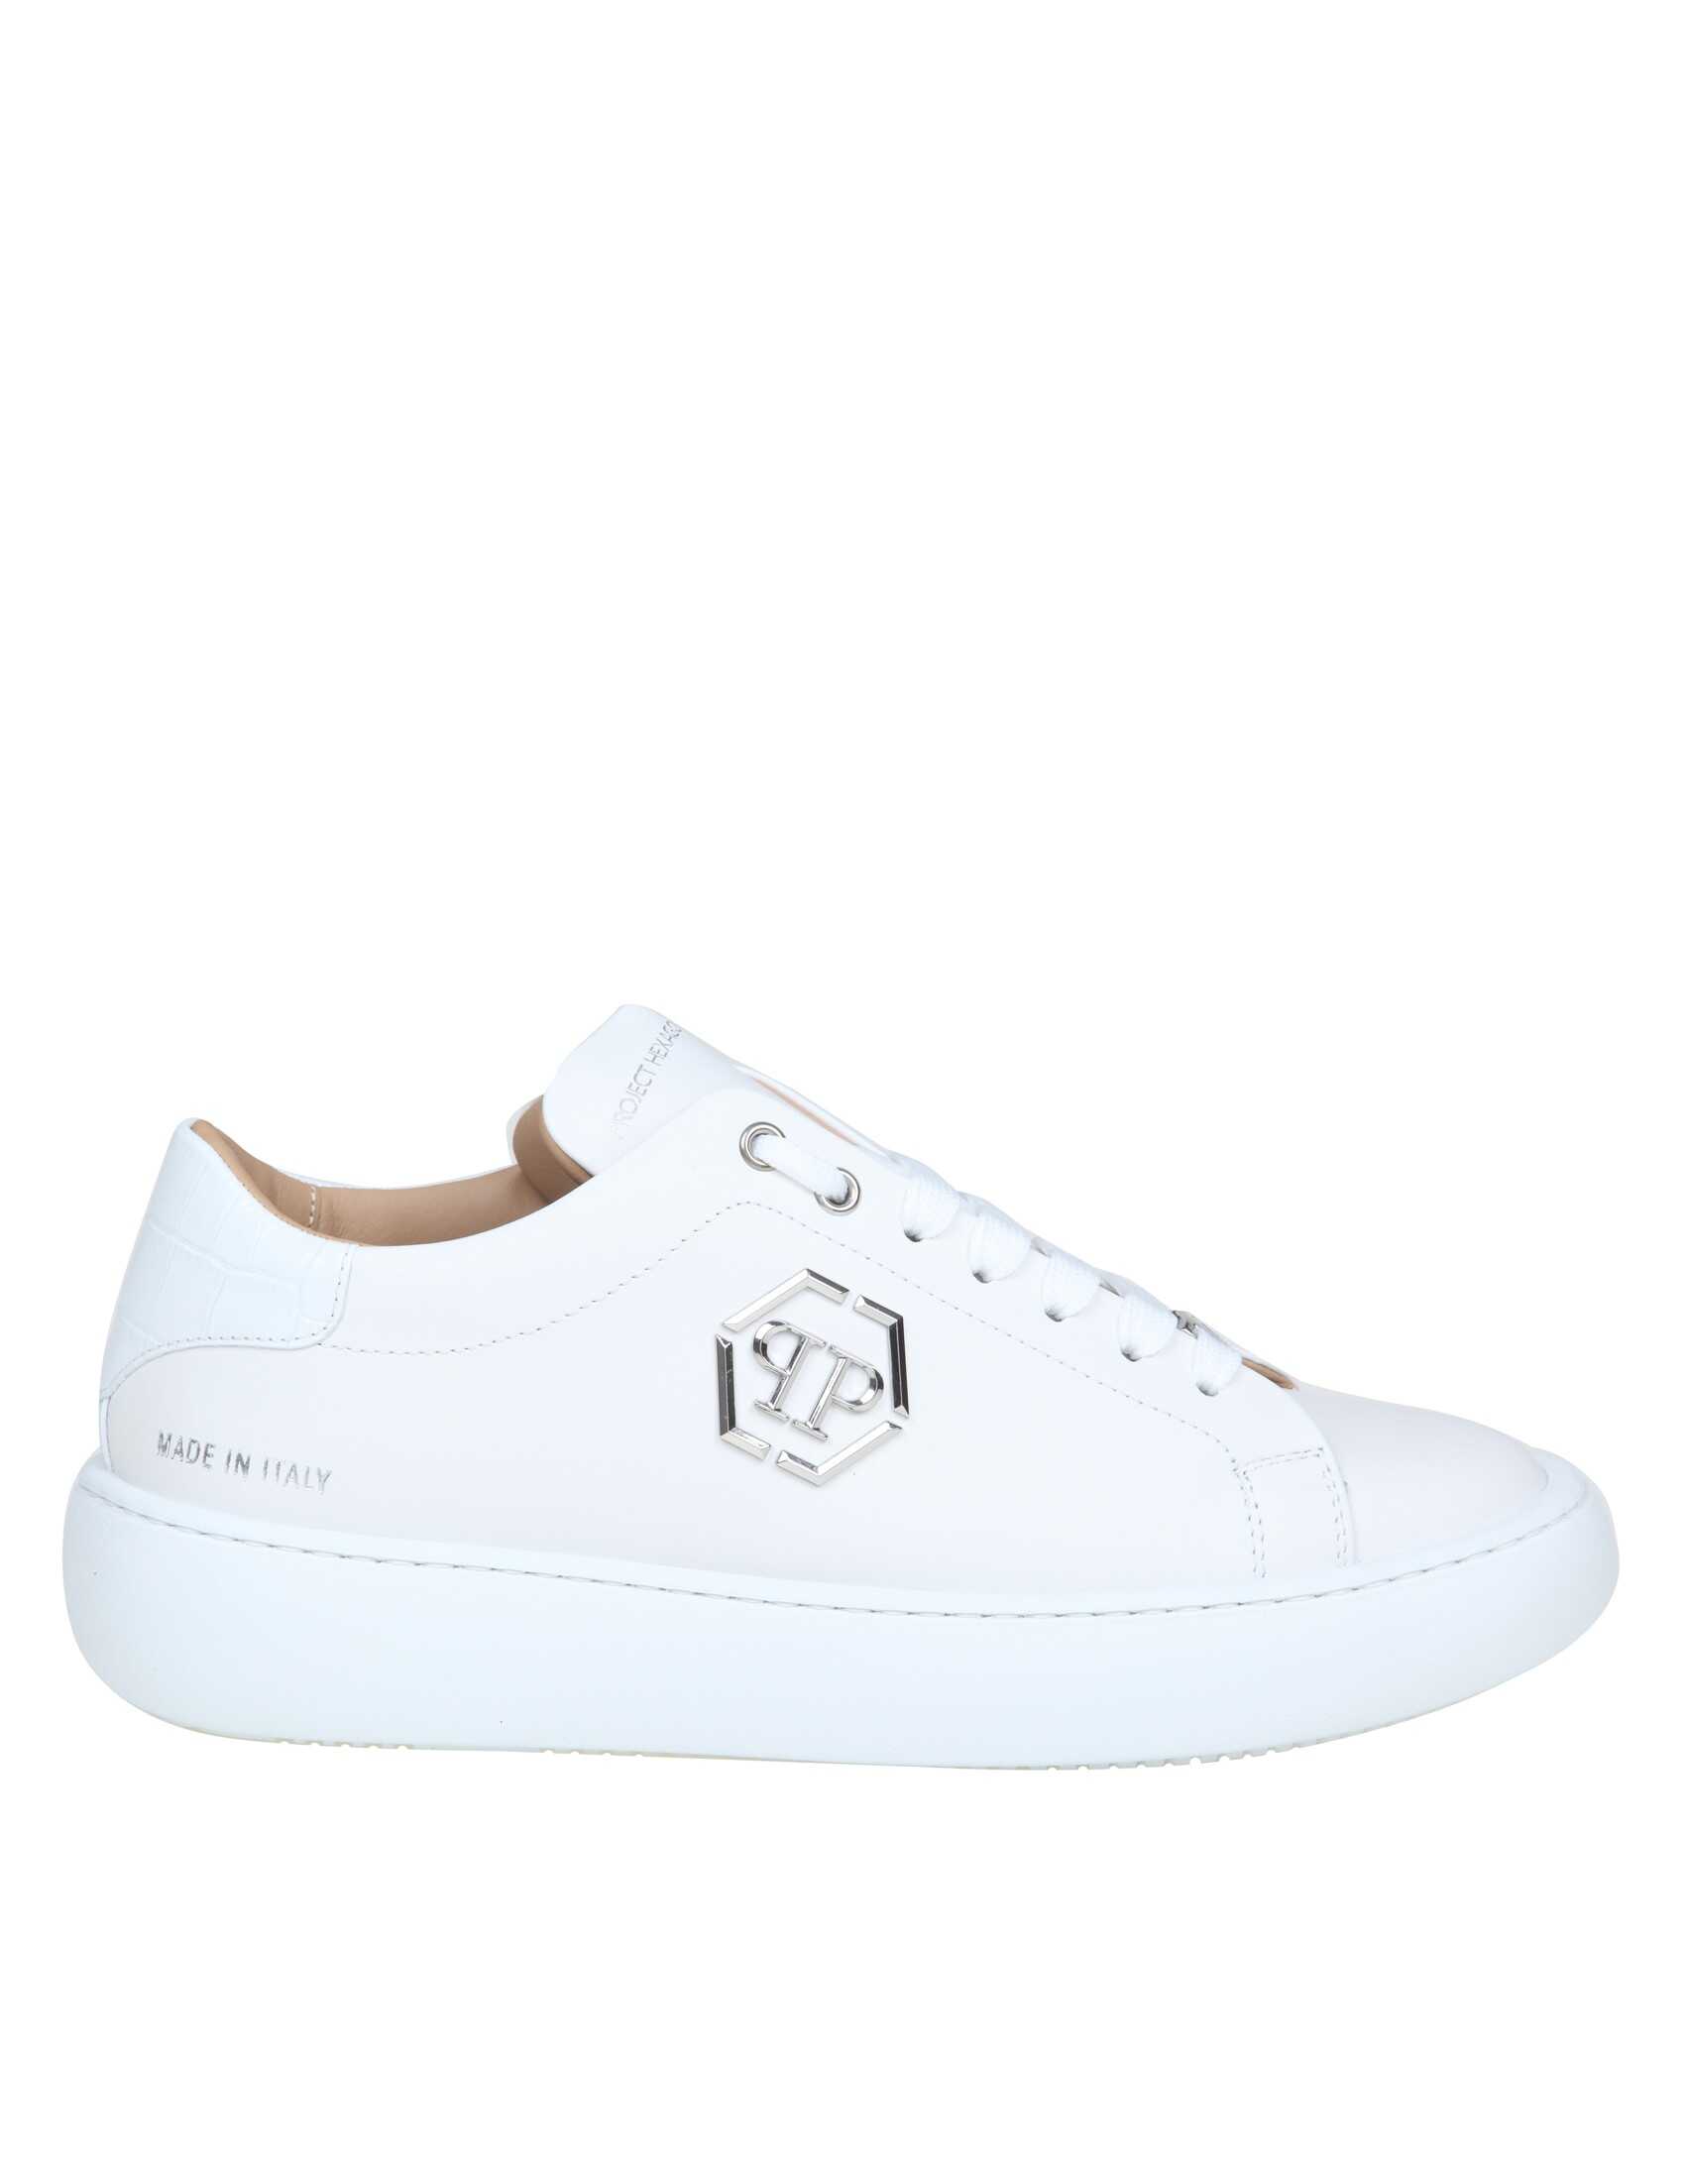 Philipp Plein hexagon sneakers in white leather White